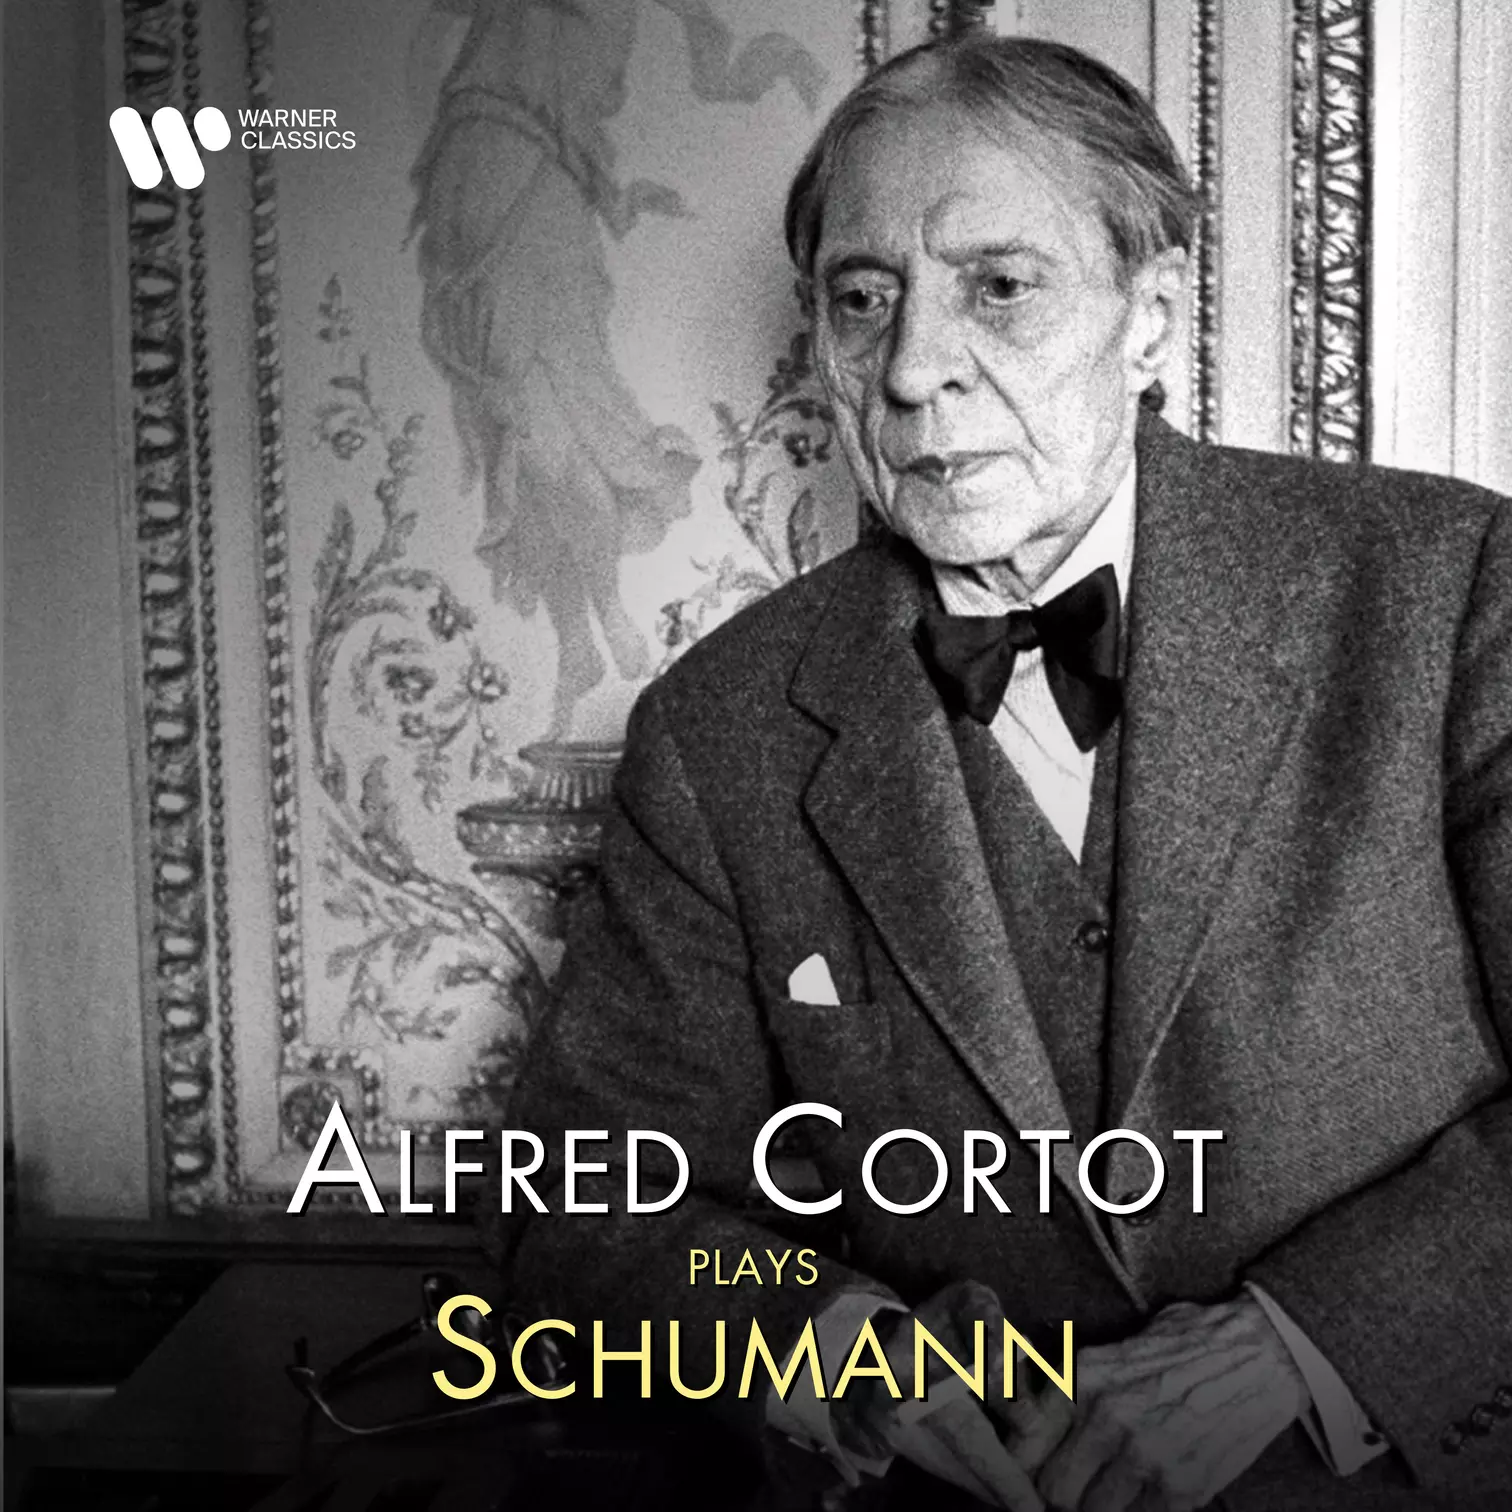 Alfred Cortot Plays Schumann | Warner Classics